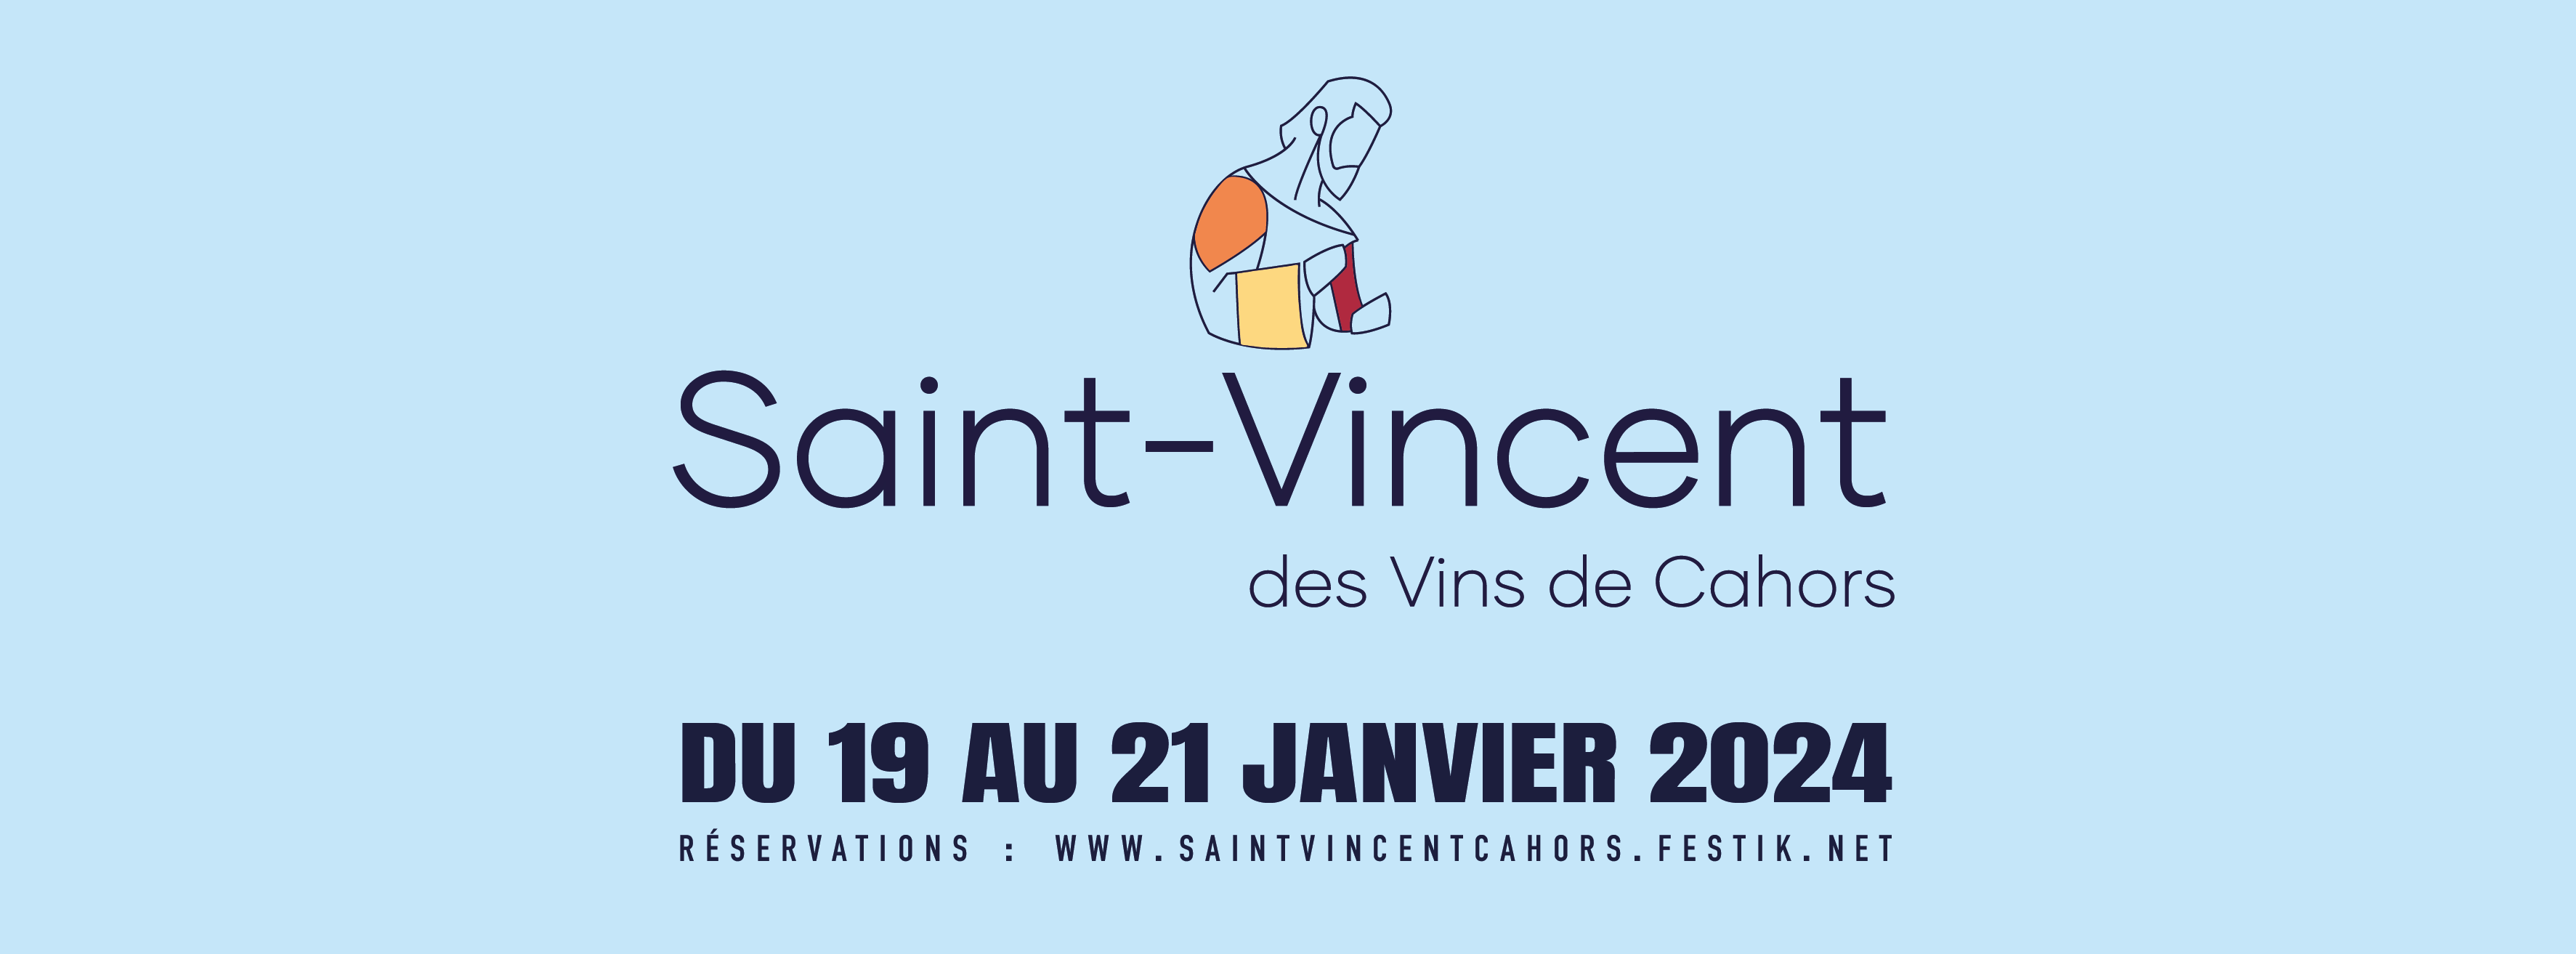 Figeac : Saint-Vincent des vins de Cahors